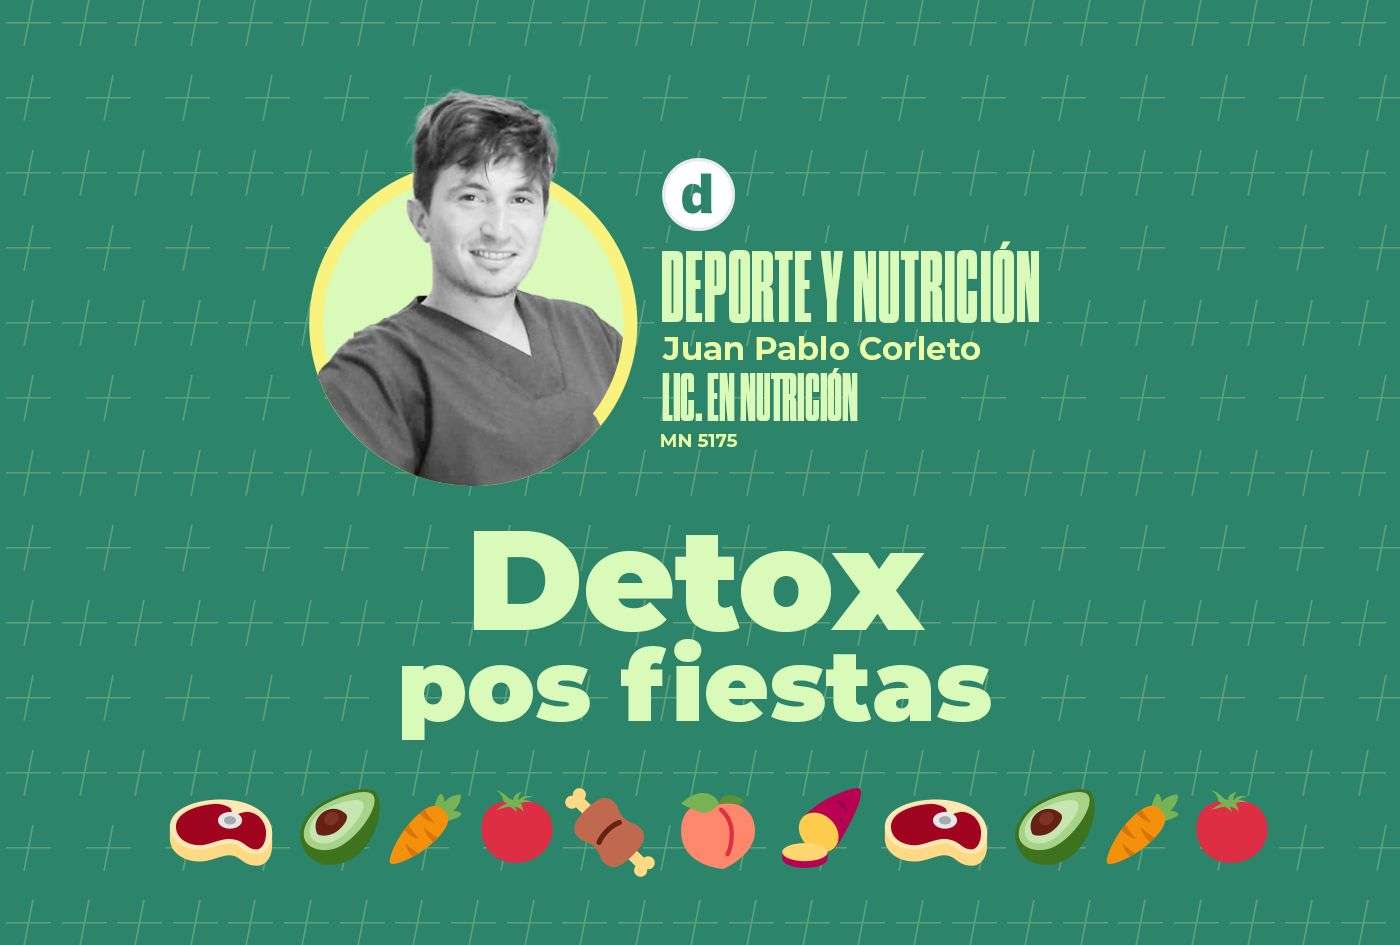 La columna del nutricionista Juan Pablo Corleto: "Detox pos fiestas"